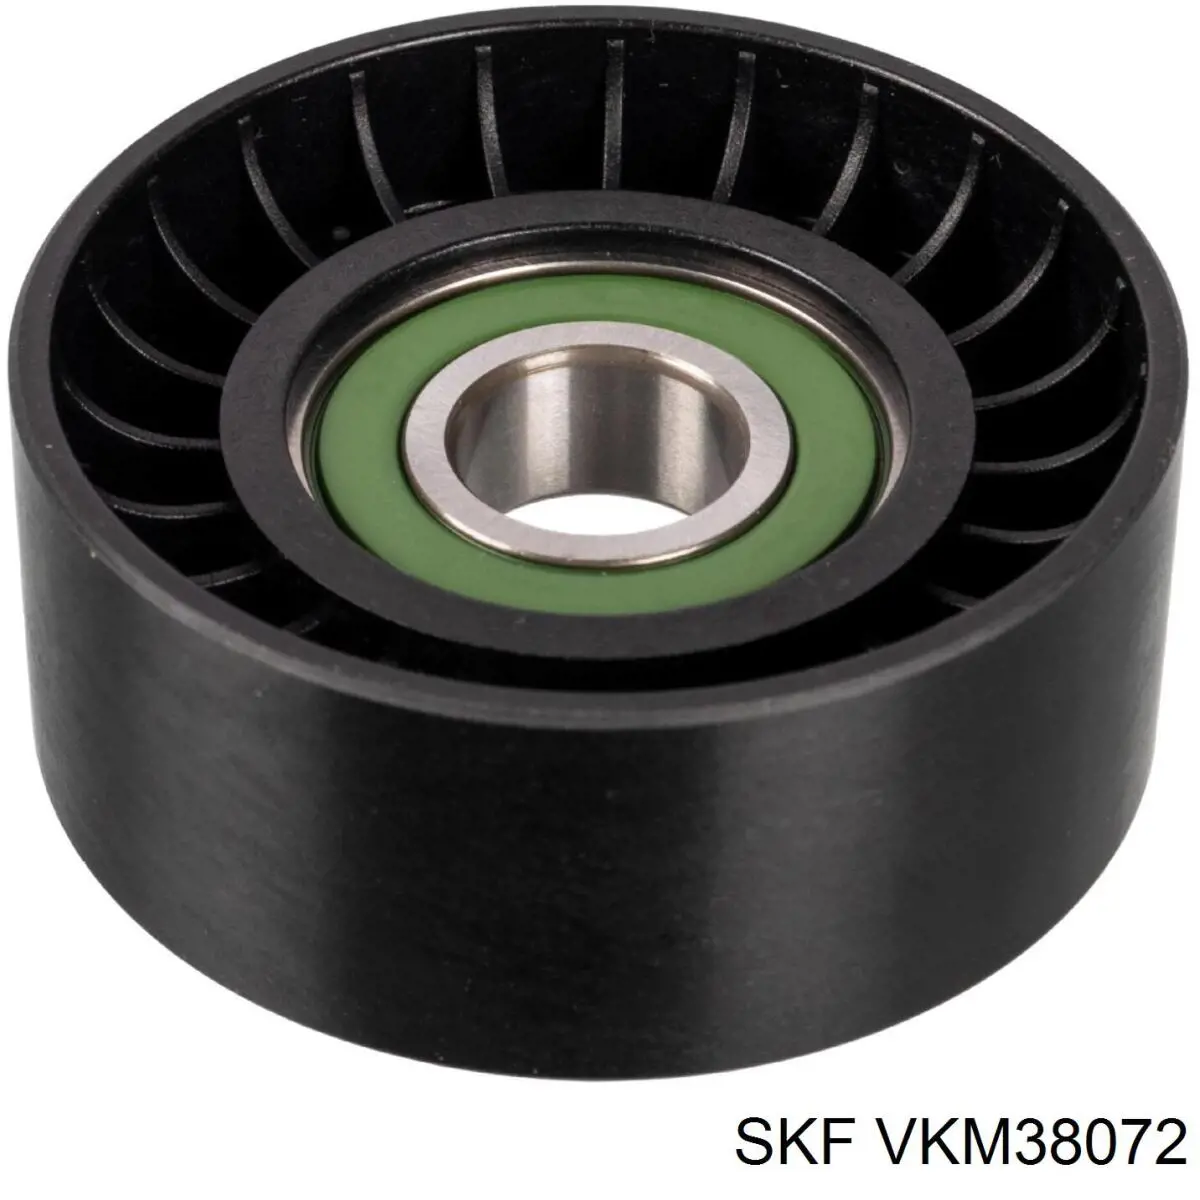 VKM38072 SKF tensor de correa, correa poli v